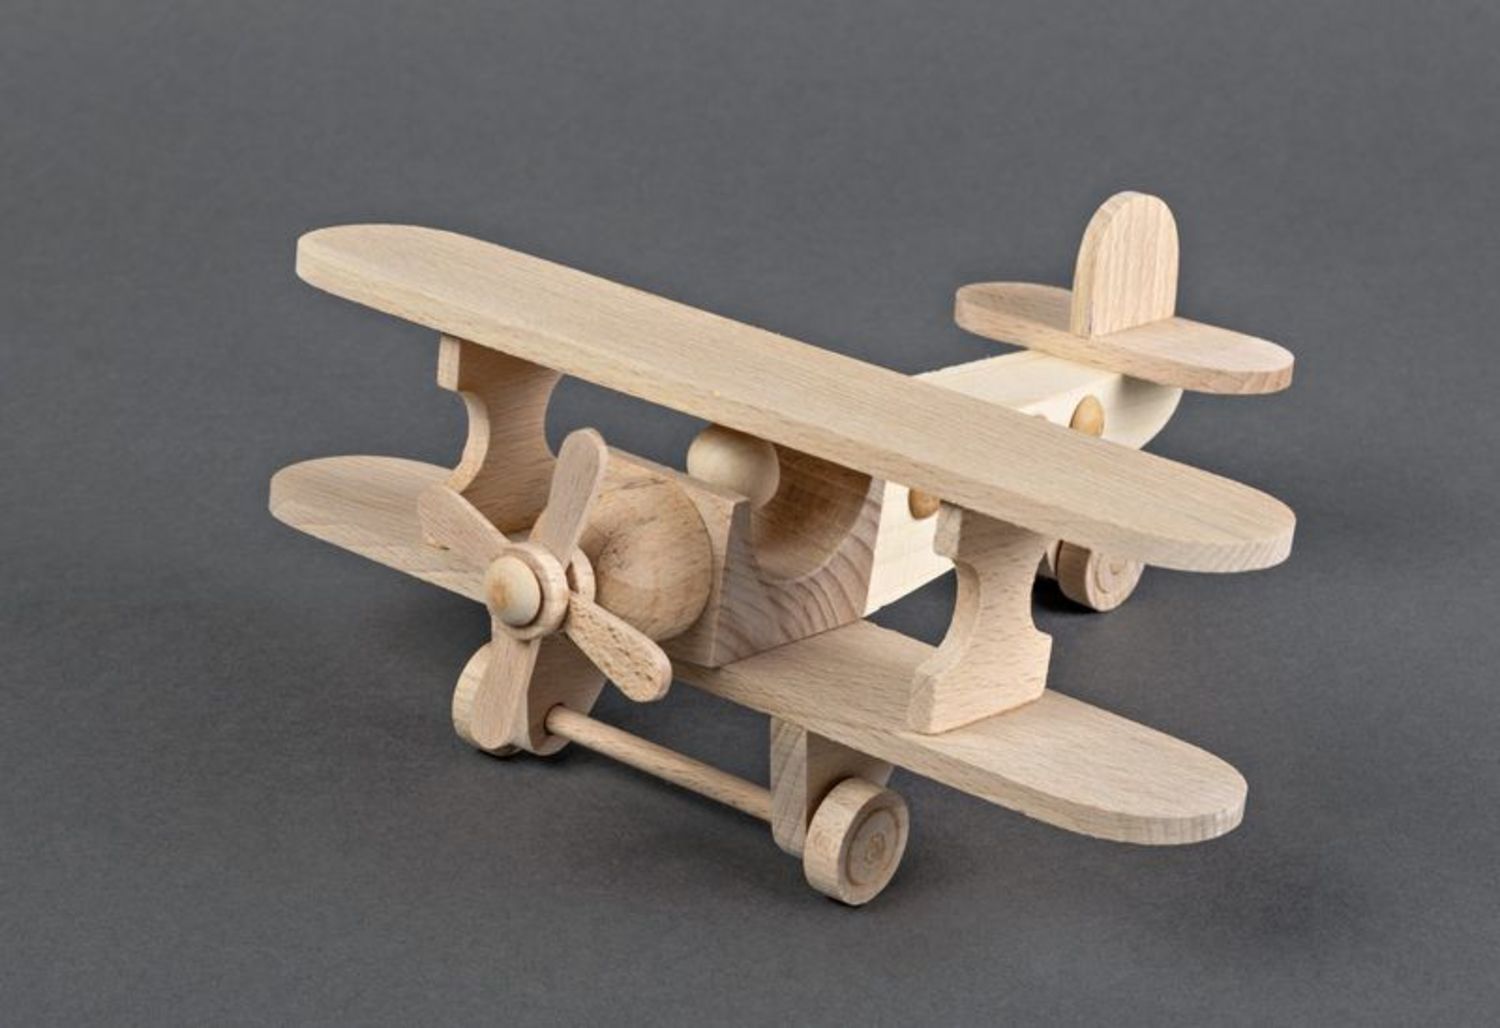 Wooden master. Изделия из дерева. Поделки из дерева. Поделки из древесины. Игрушка самолет деревянный.